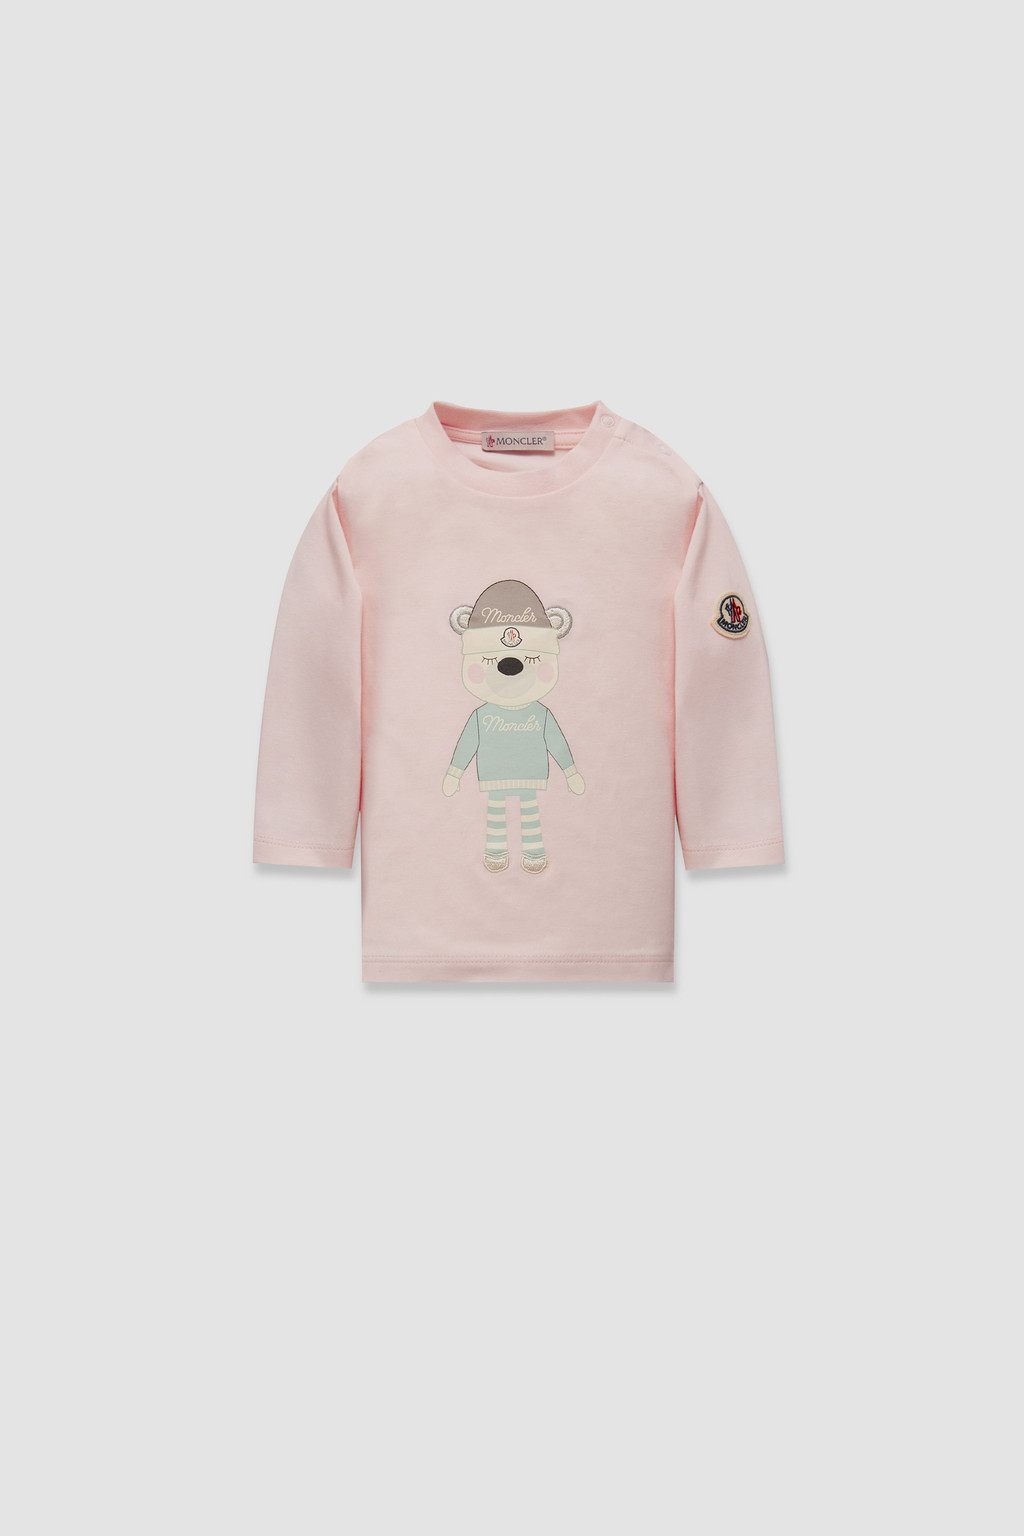 ソフトピンク ロングスリーブTシャツ : ウェア 向けの キッズ